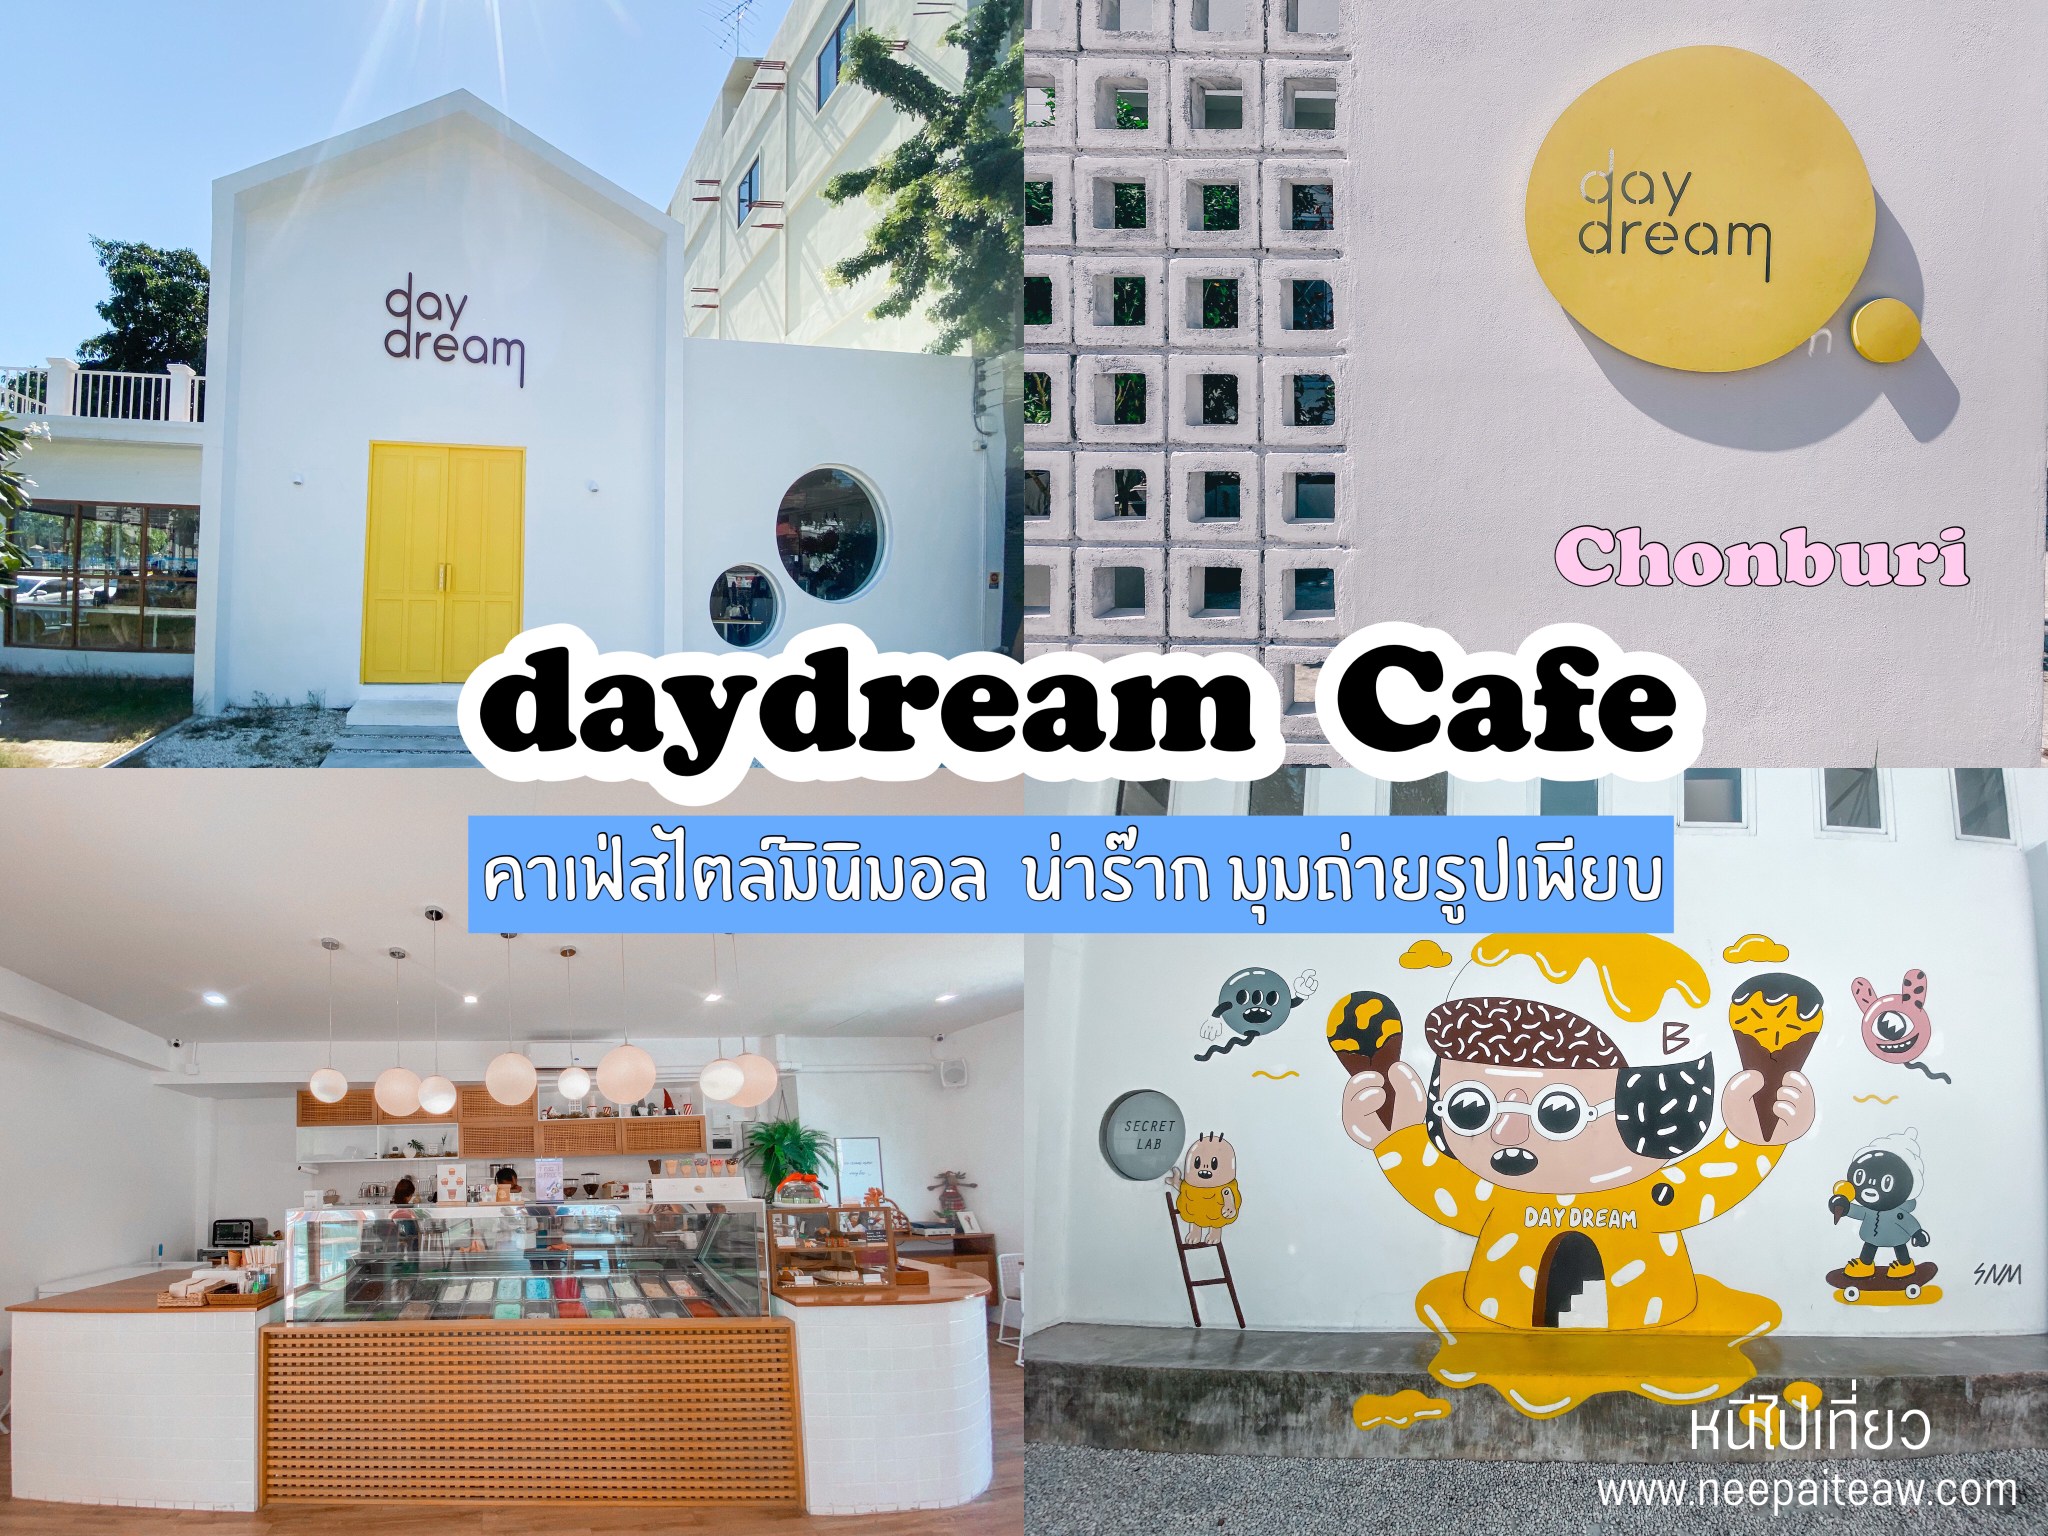 Day Dream cafe คาเฟ่สไตล์มินิมอล น่าร๊าก มุมถ่ายรูปเพียบ